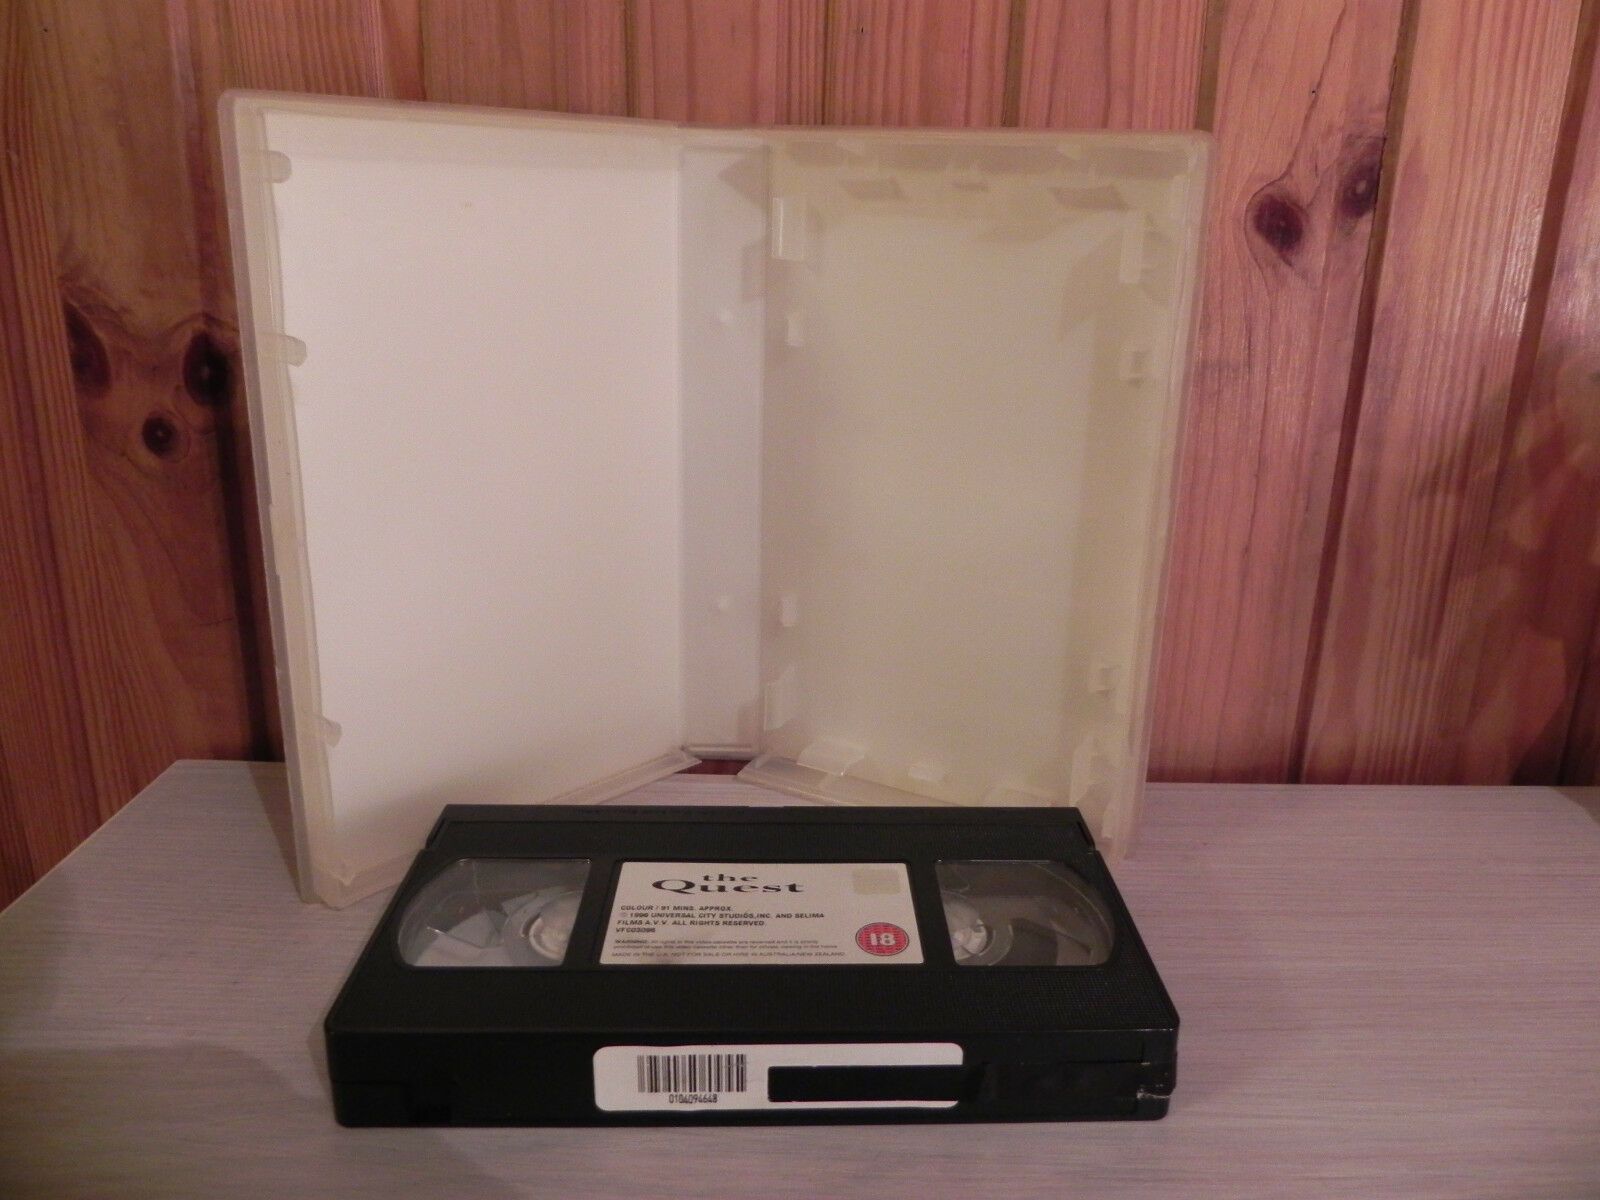 THE QUEST - Big Box - Van Damme - Martial Arts 1920's - Ex-Rental - Pal VHS-